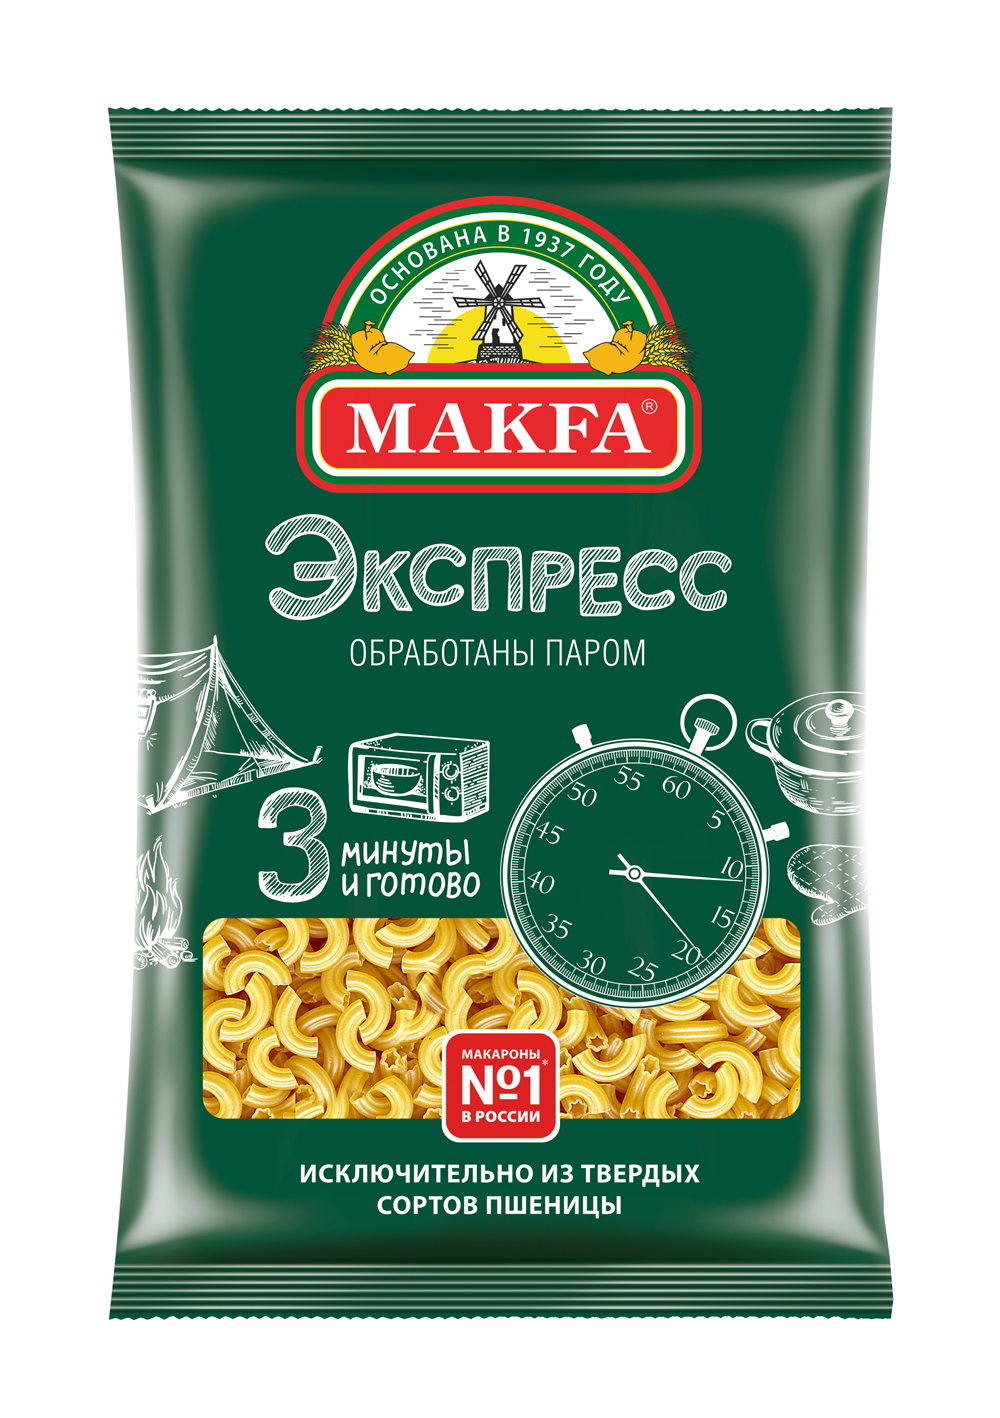 Макаронные изделия Makfa Рожки 400 г - купить в Мегамаркет Москва Пушкино, цена на Мегамаркет